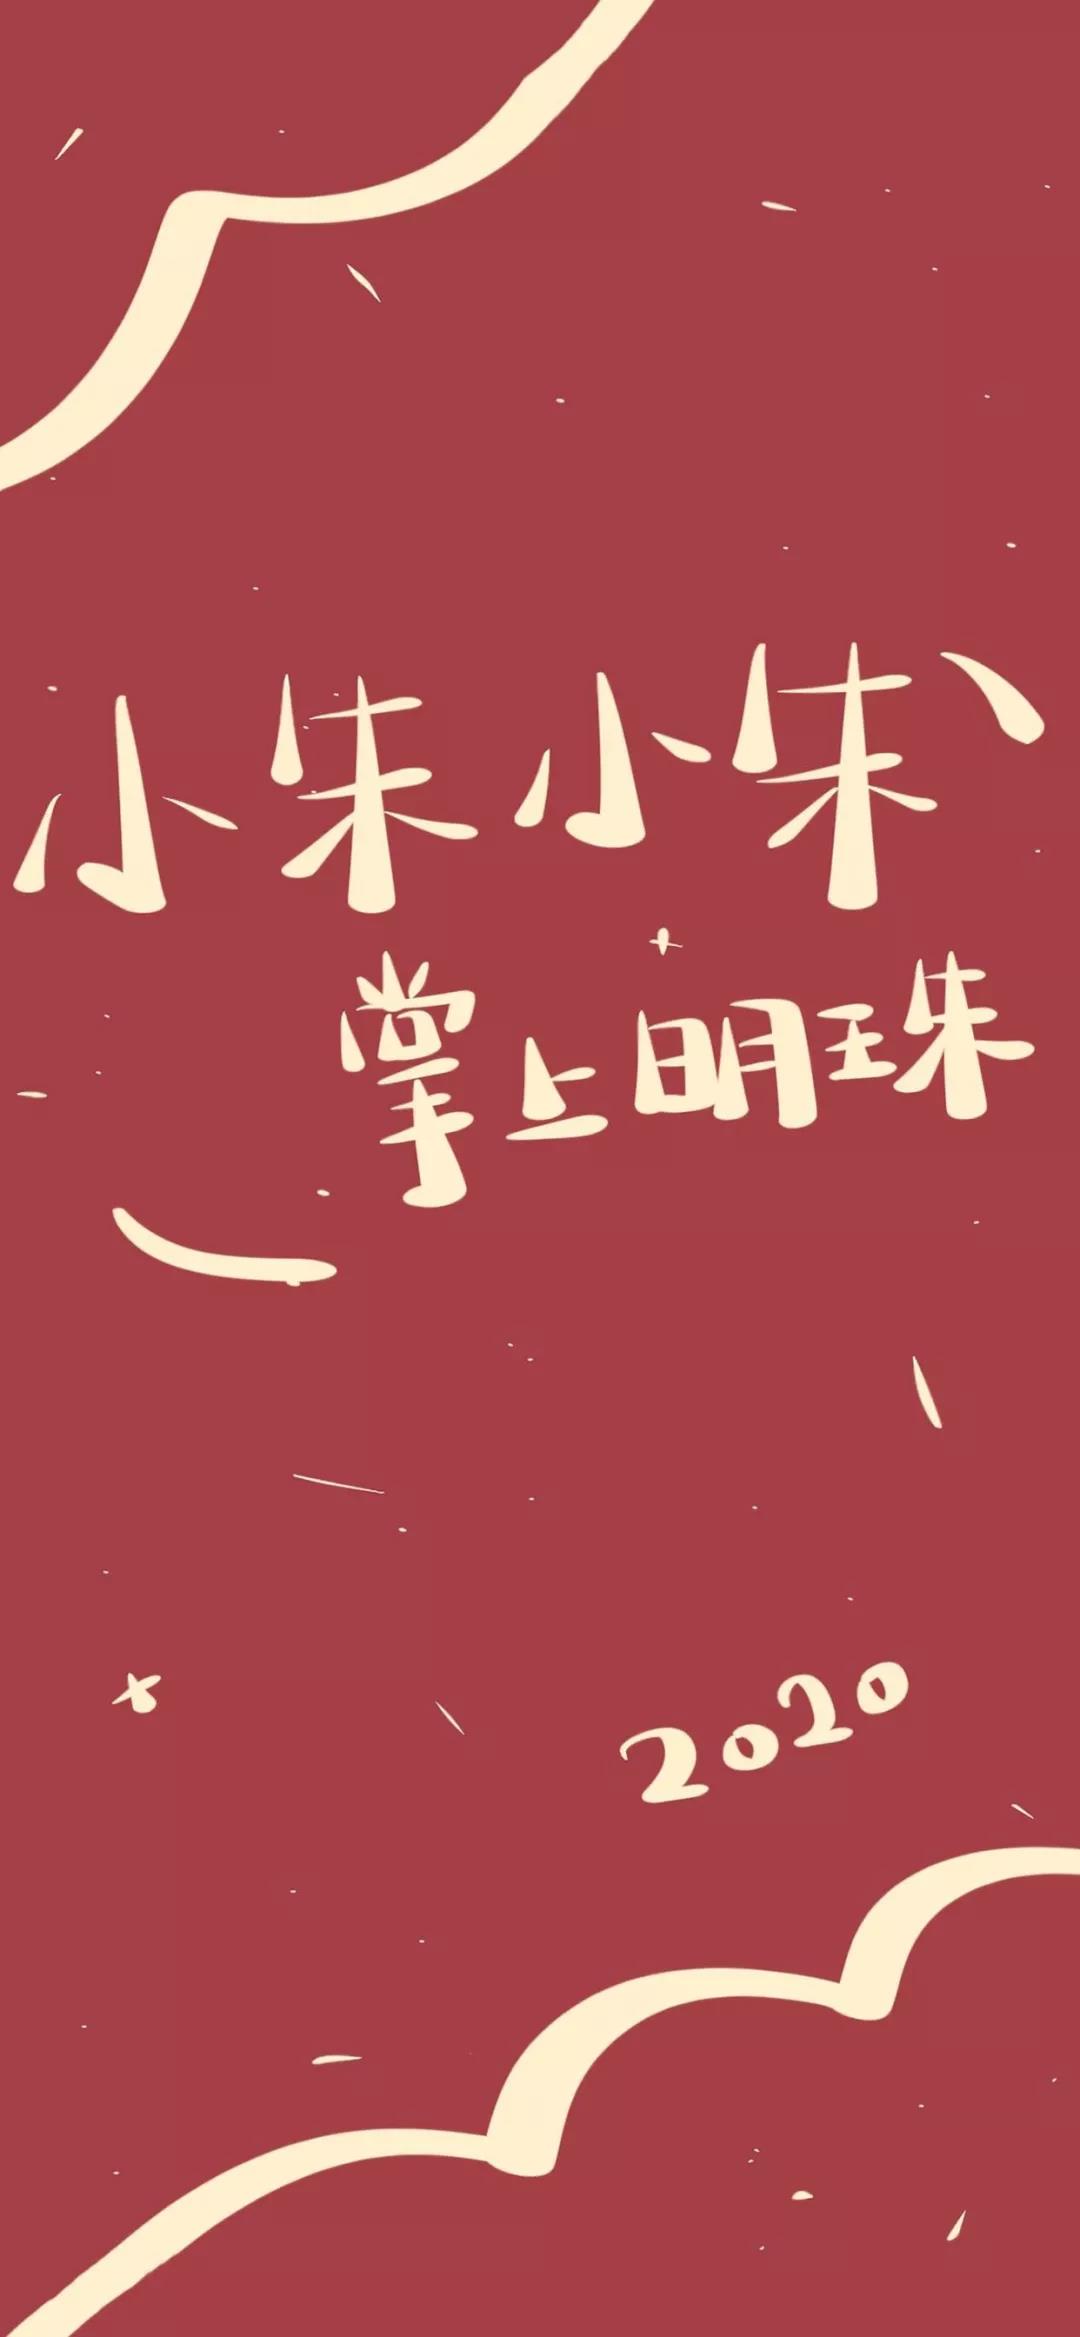 姓氏壁纸 中国传统百家姓 中国风 非原创 侵… - 堆糖，美图壁纸兴趣社区